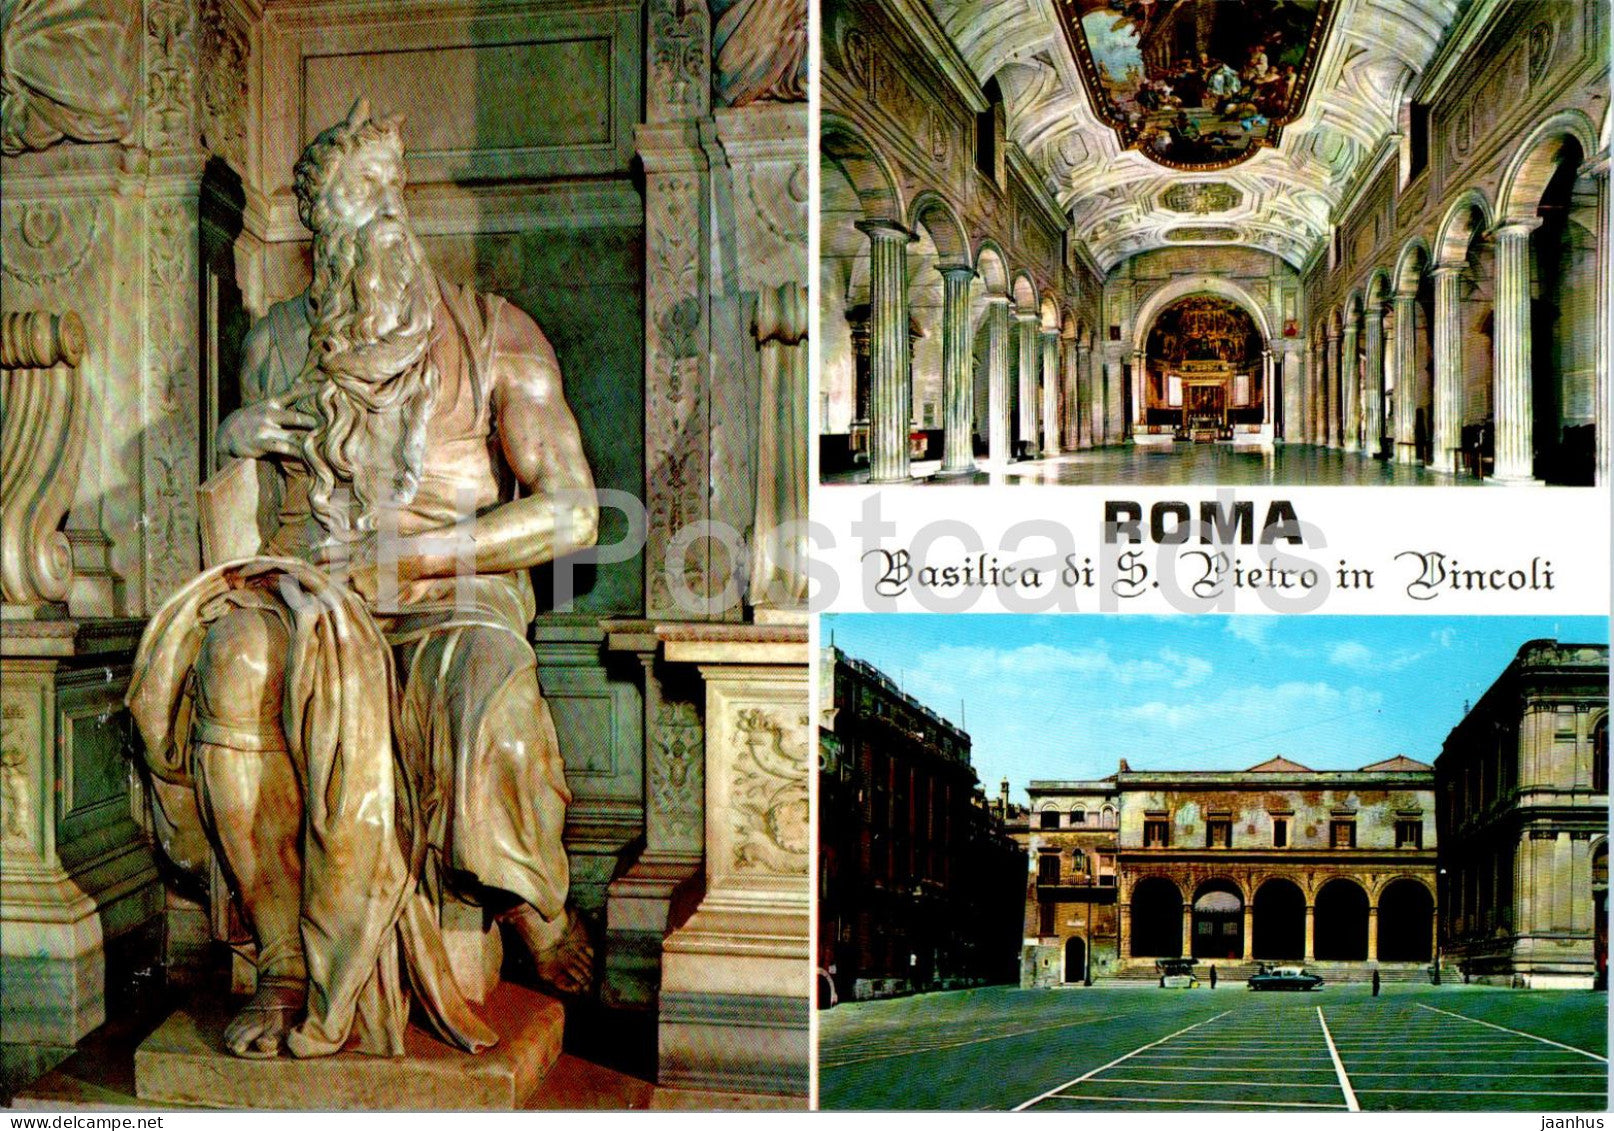 Roma - Rome - Basilica di S Pietro in Vincoli - Moses - interioe - cathedral - facade multiview - 9022 - Italy - unused - JH Postcards